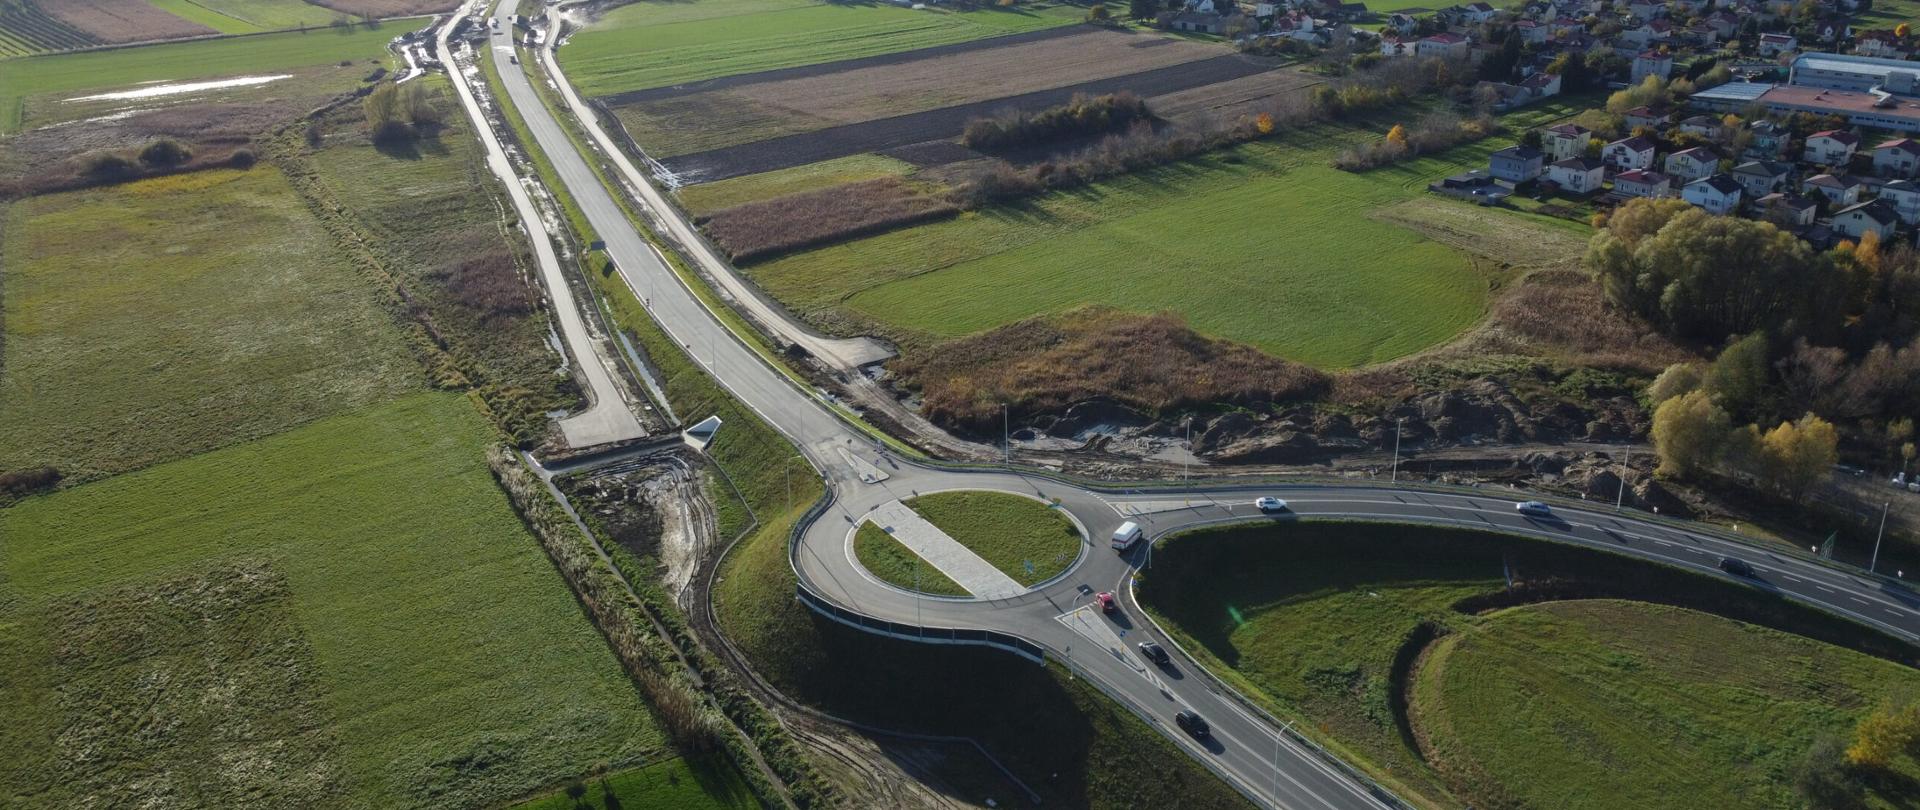 DK9 obwodnica Ostrowca Świętokrzyskiego - zdjęcie z drona, jednojezdniowa droga asfaltowa wśród pól, po obu stronach wąskie drogi dojazdowe, na pierwszym planie rondo trójwlotowe, w oddali zabudowania 